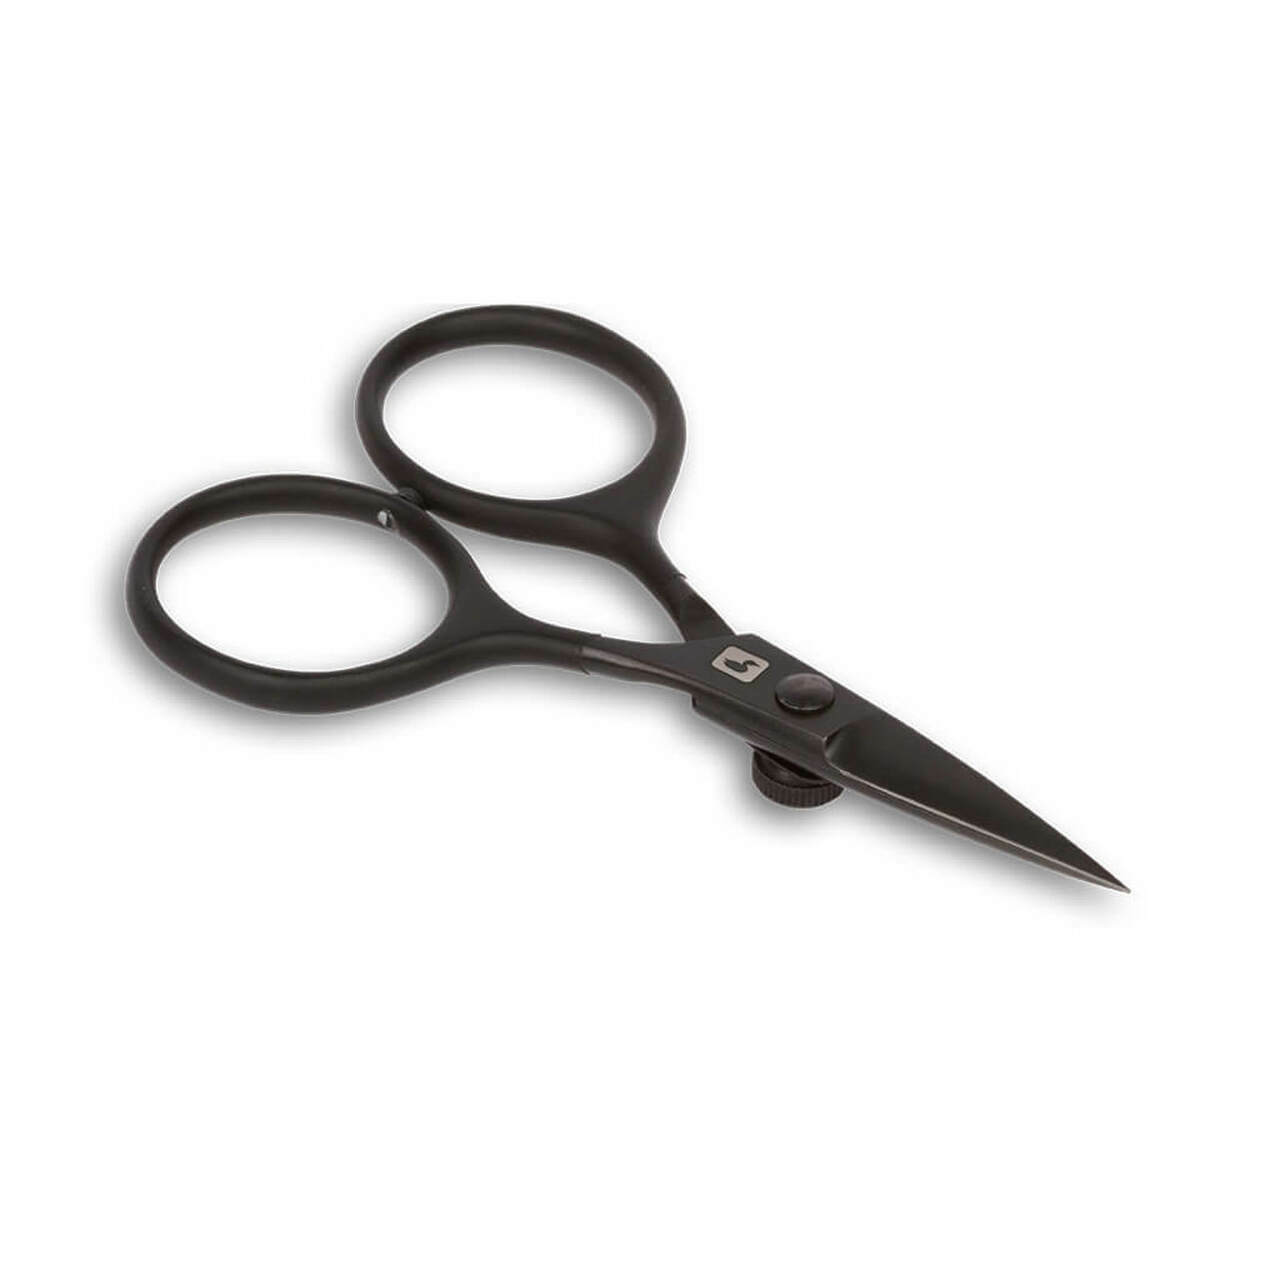 Loon Razor Scissors 4" - Black